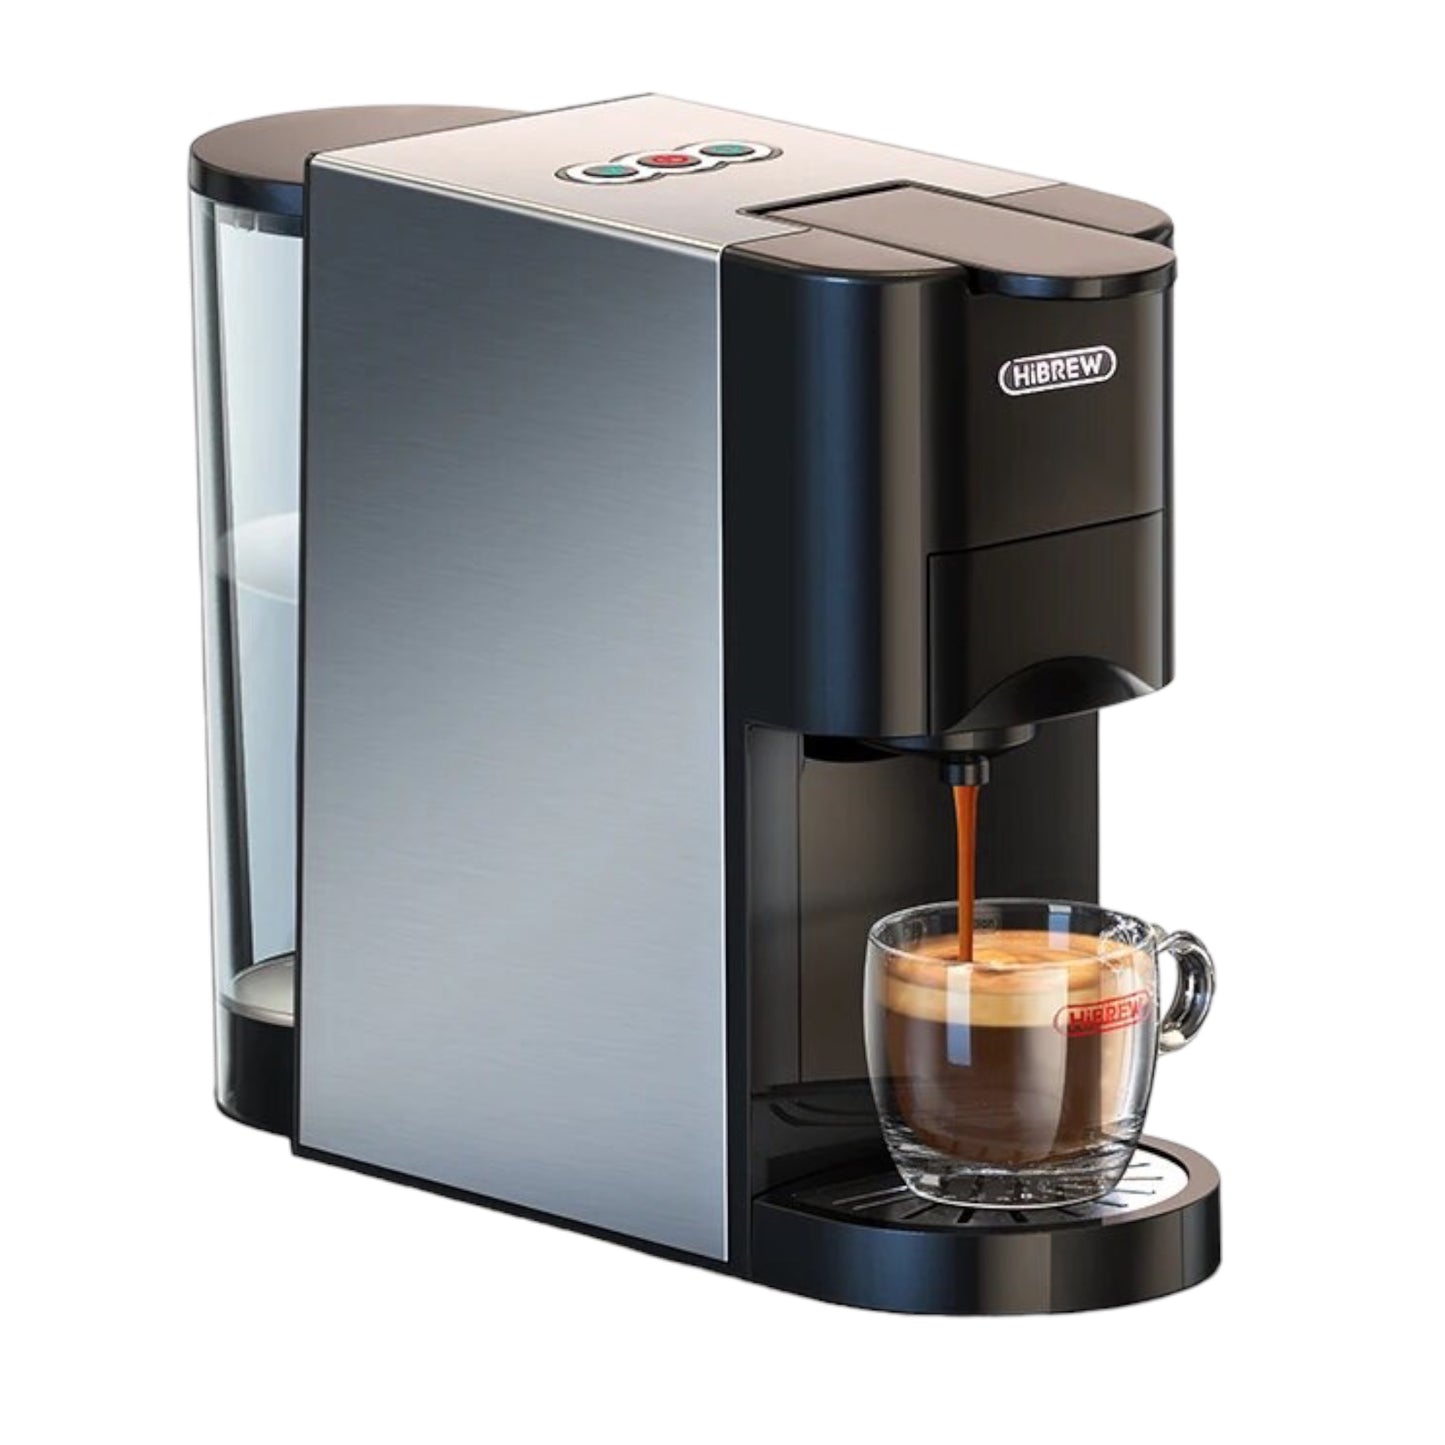 ماكينة قهوة 5 في 1 متوافقة مع كبسولات دولتشي و نيسبريسو و K-cup ومسحوق القهوة Hibrew H3 
 مع صانعة رغوة الحليب (اختياري) - ضمان ٢٤ شهر